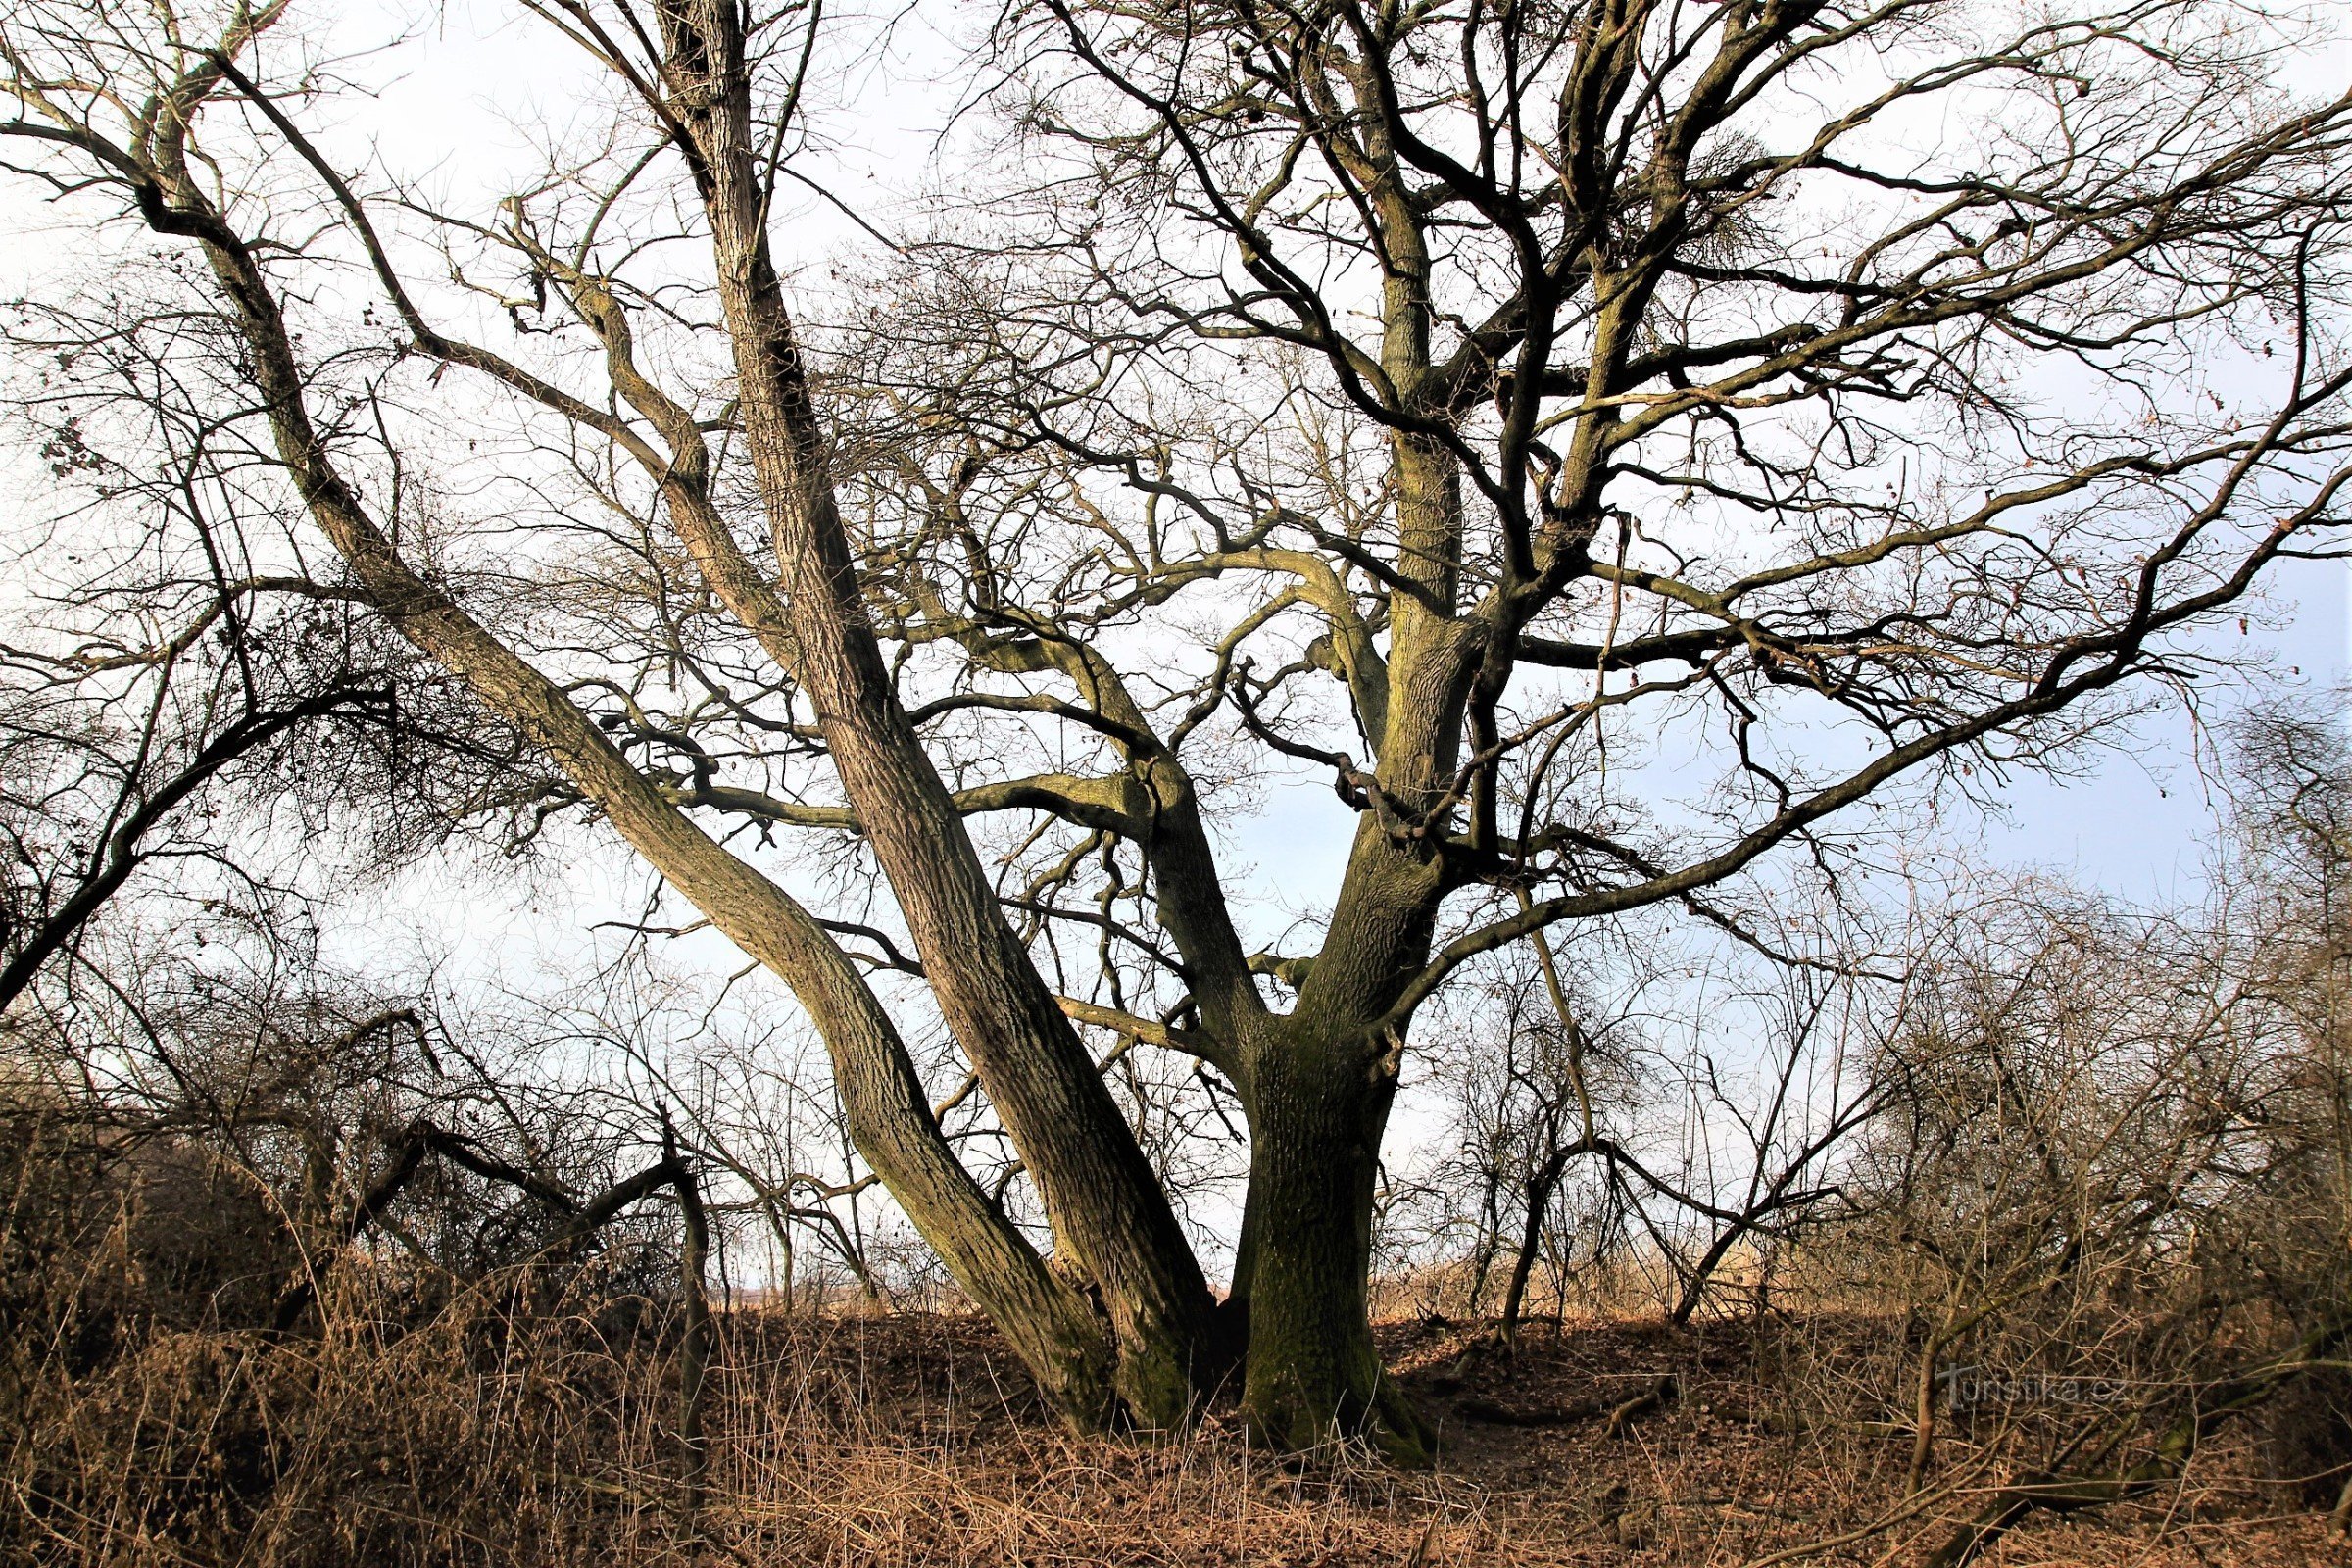 トロヤークオークの木は、森の端にある低木の境界に生えています